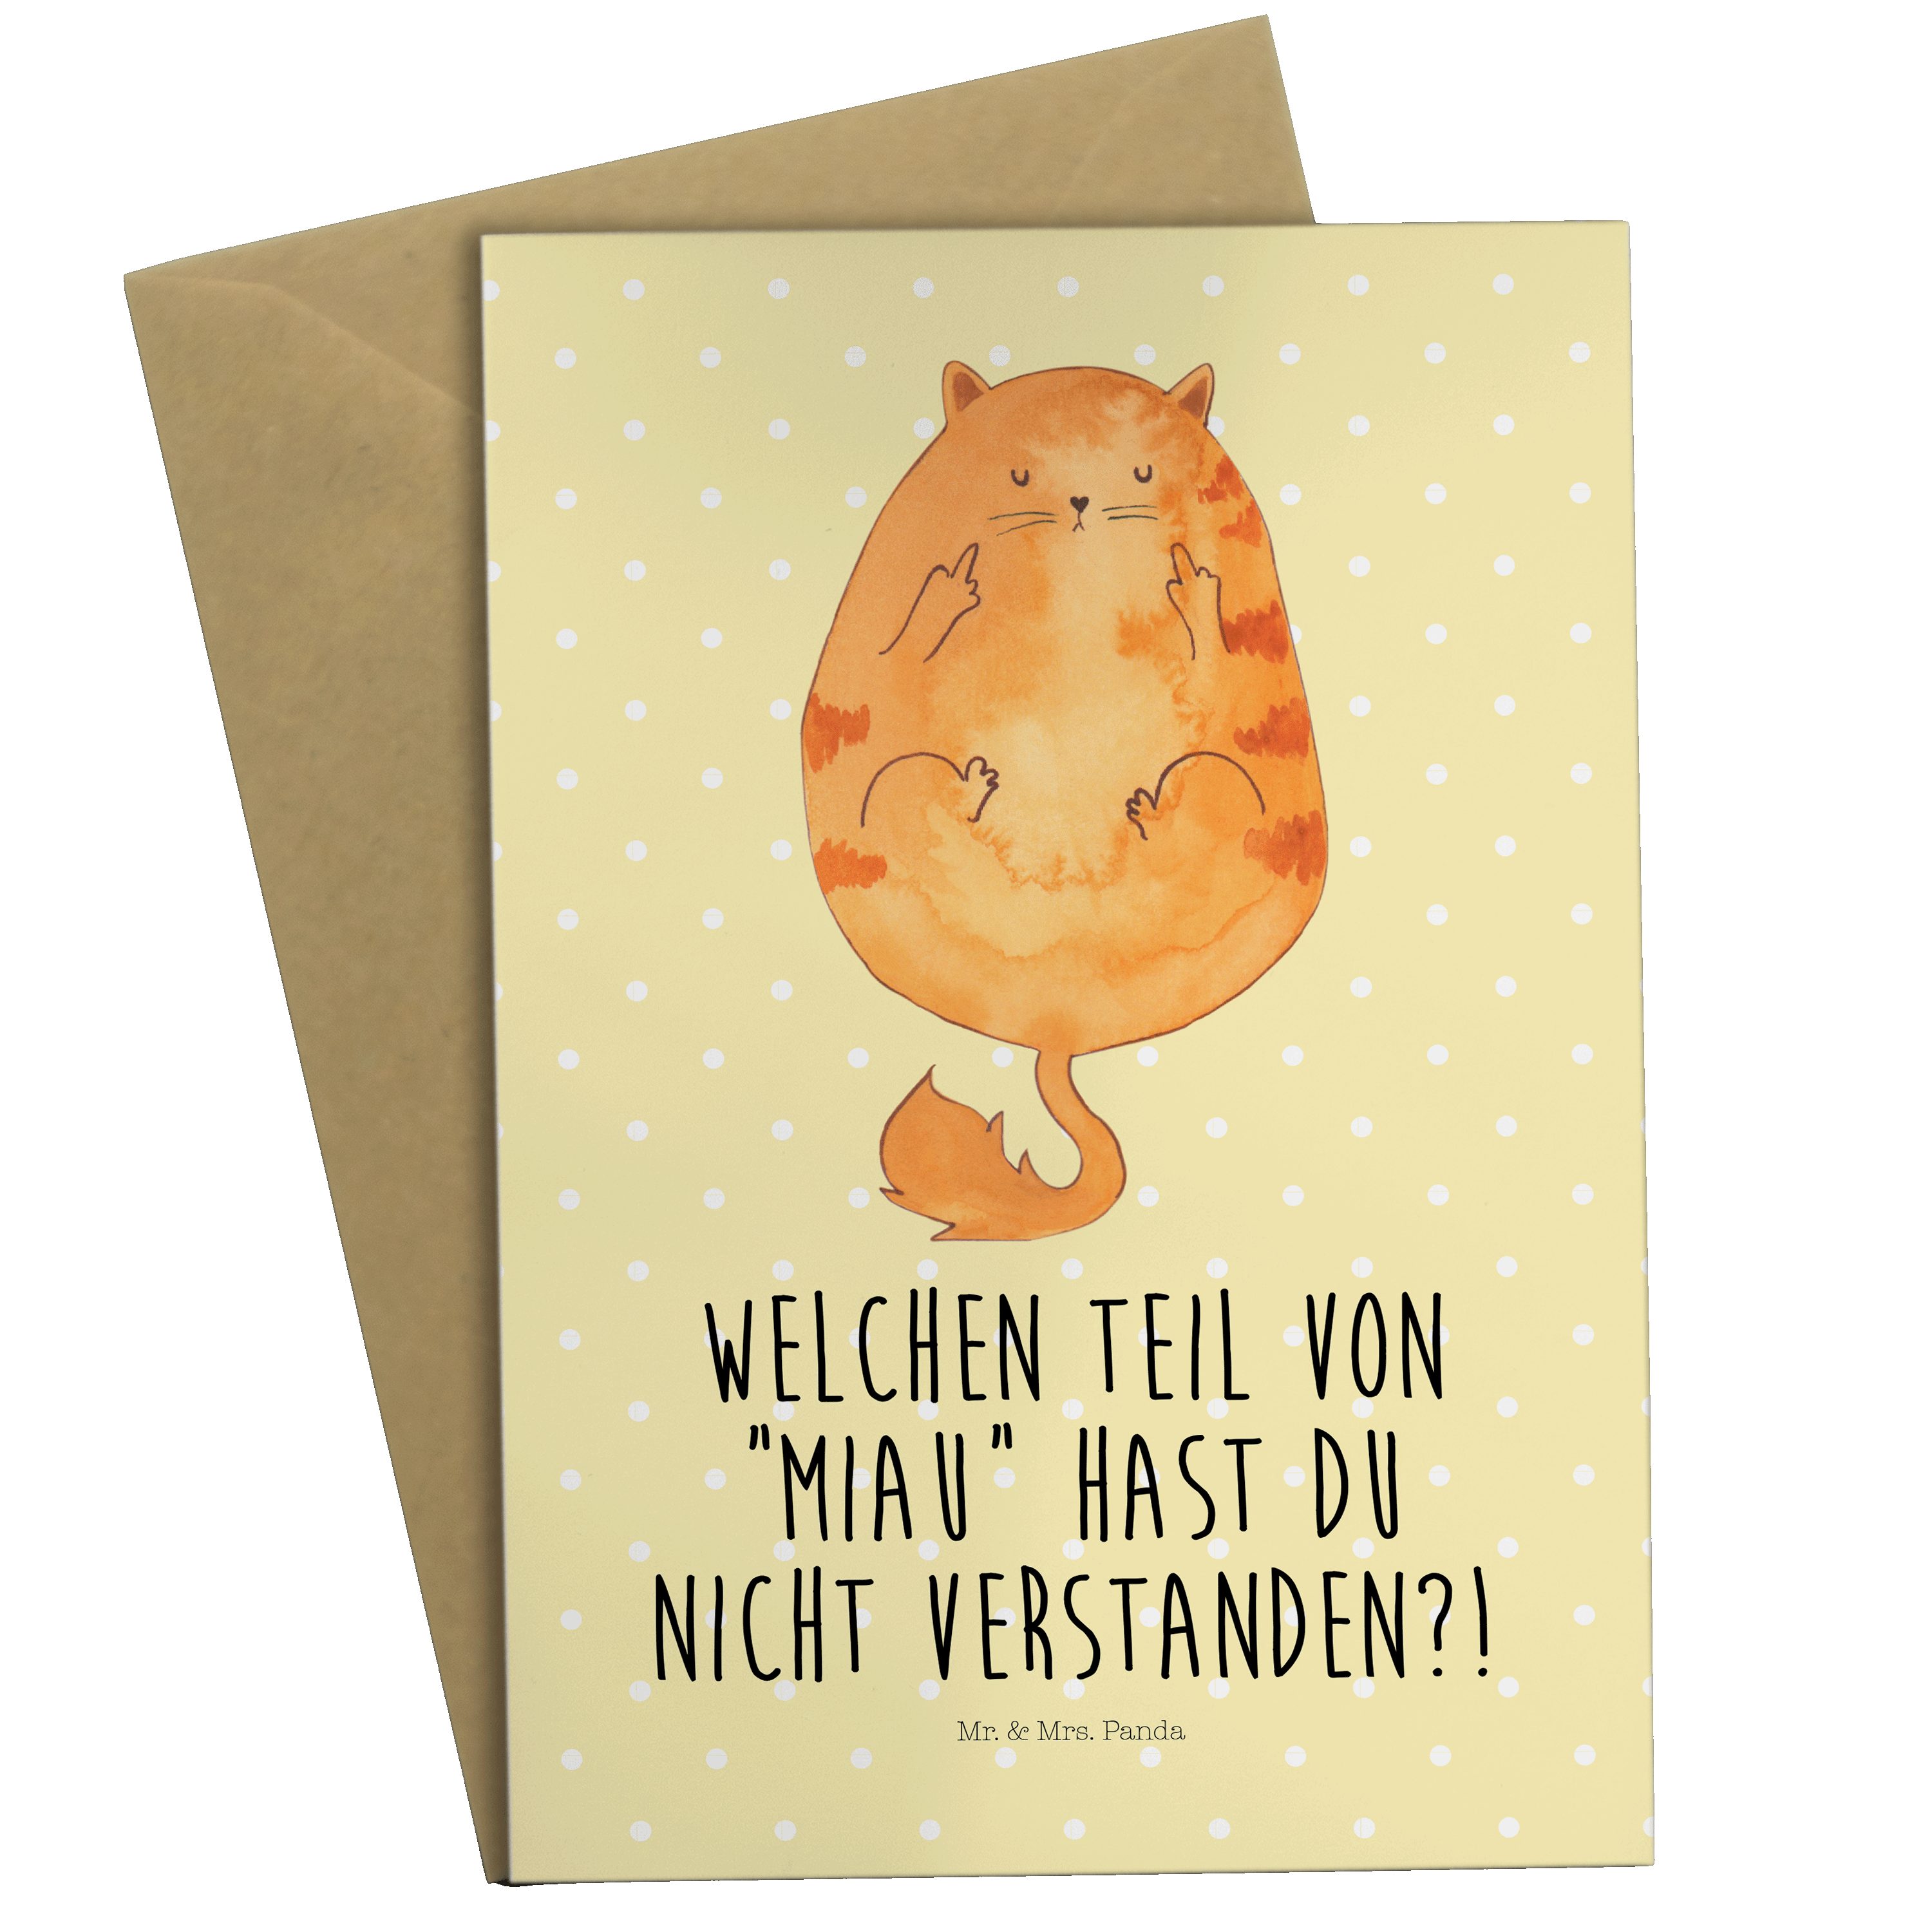 Mr. & Mrs. Panda Grußkarte Katze Mittelfinger - Gelb Pastell - Geschenk, Glückwunschkarte, miau